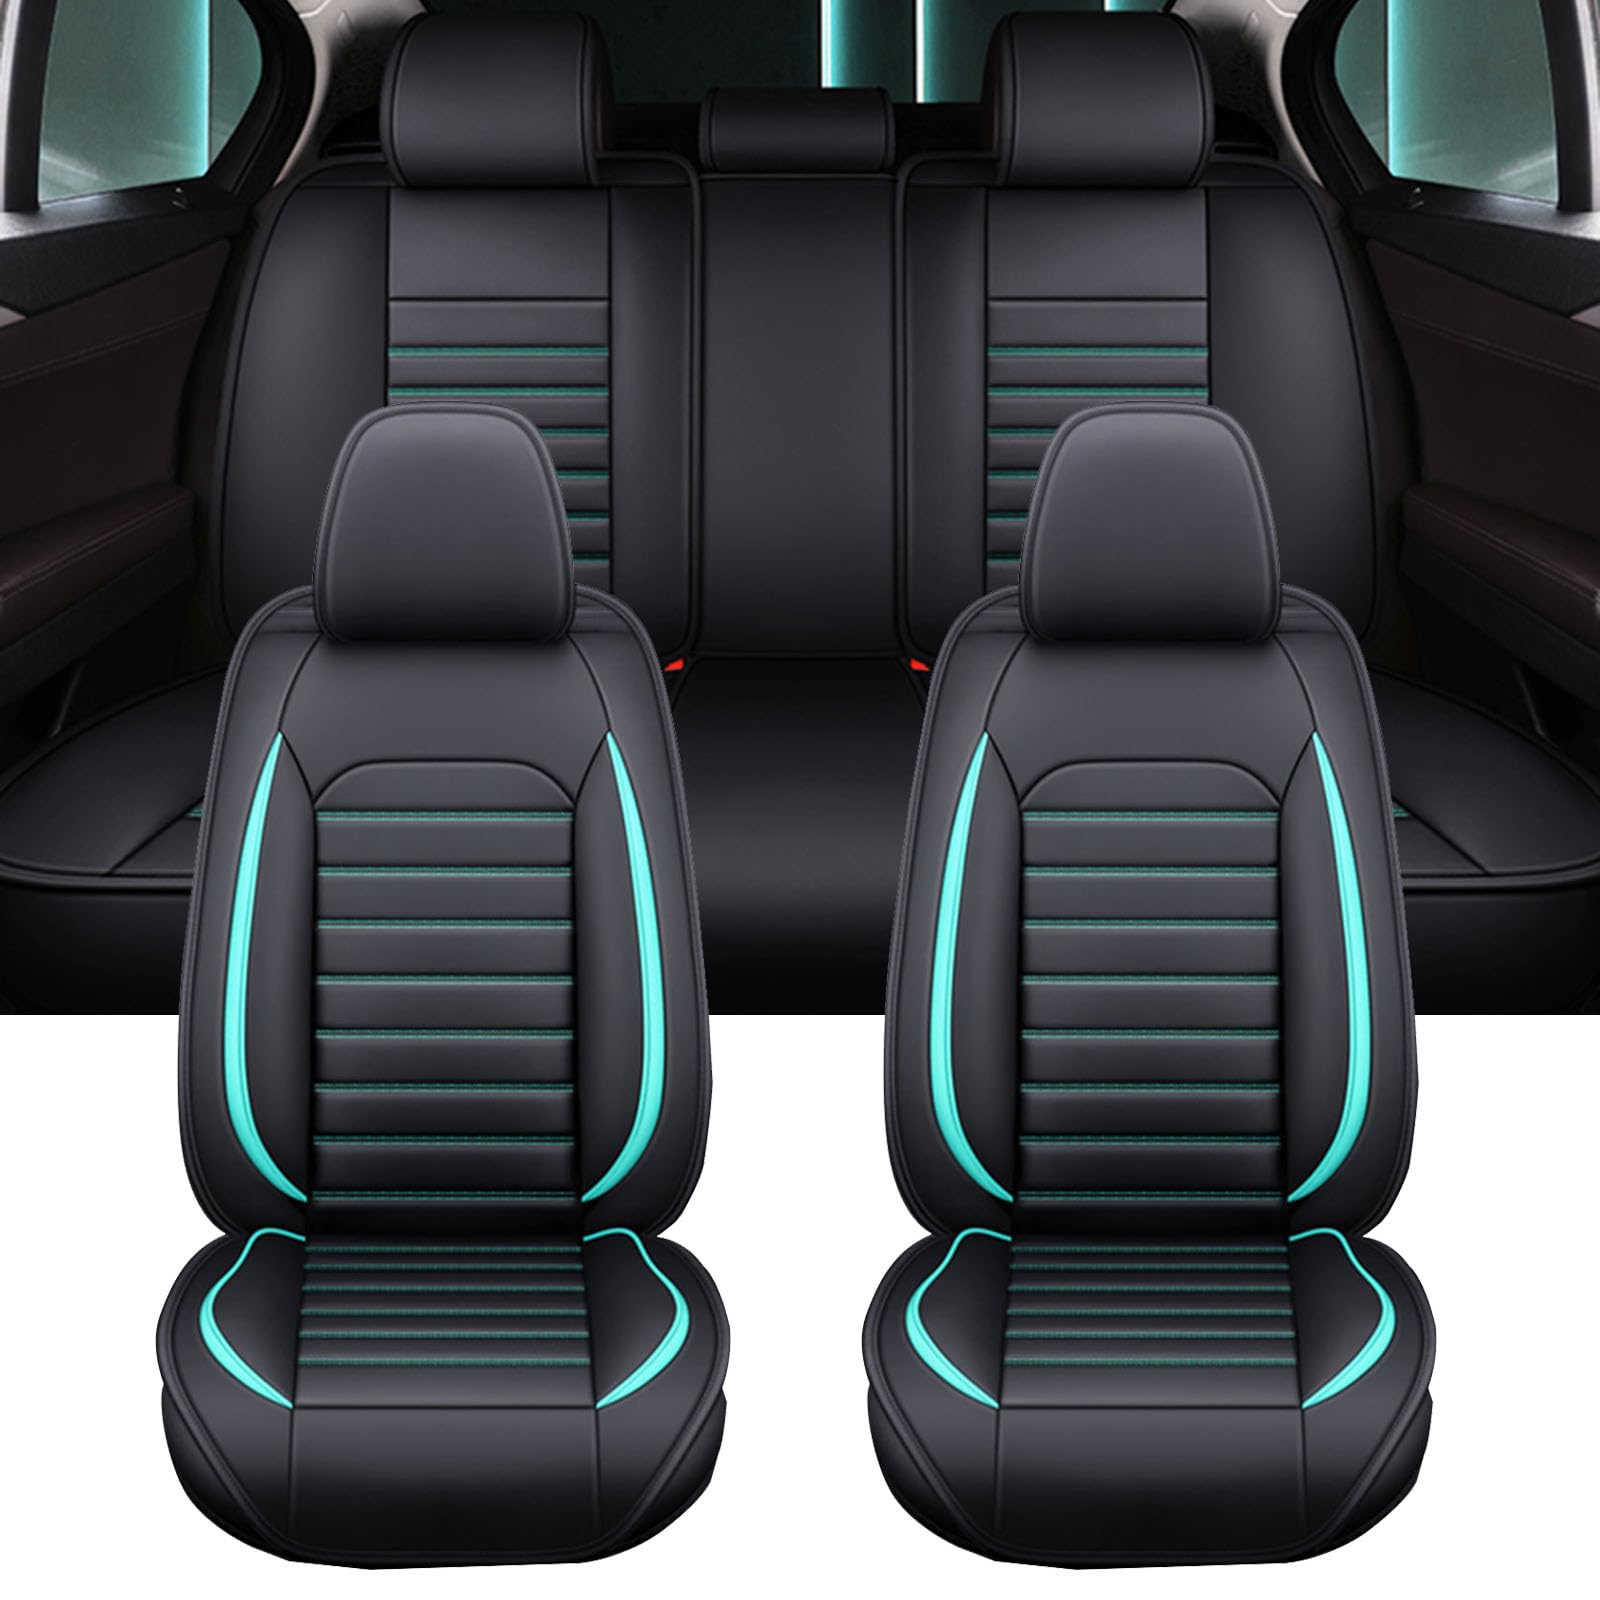 XLUMIO Auto Sitzbezüge Set für Mercedes Benz CLK Class CLK 200K CLK 280 CLK 350 CLK 240, 5 Sitzer Sitzbezüge Vorne und Hinten, Wasserdichter PU Leder Autositzschutzbezug,B Black+Blue von XLUMIO